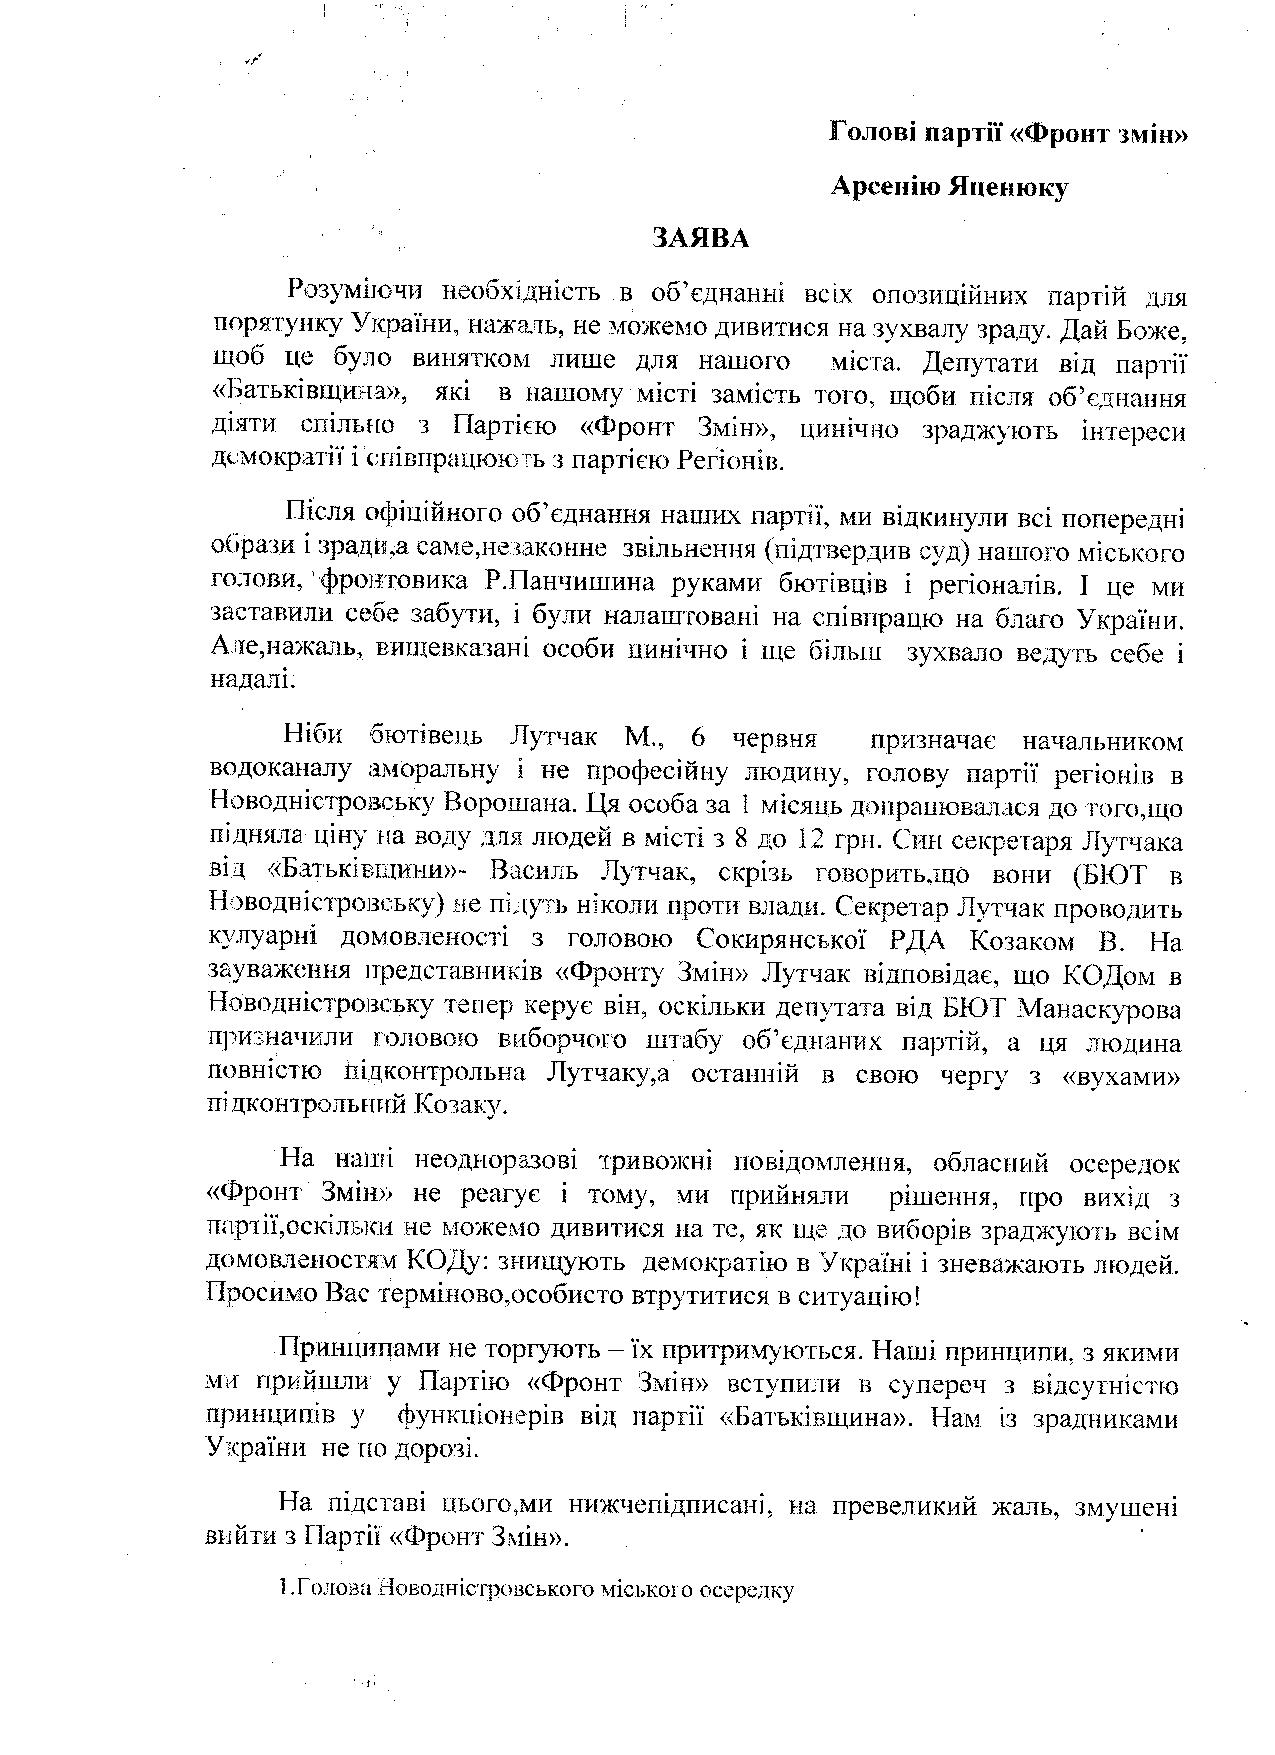 Виключений з 'Батьківщини' Лутчак від імені БЮТ керує в Новодністровську КОДом?